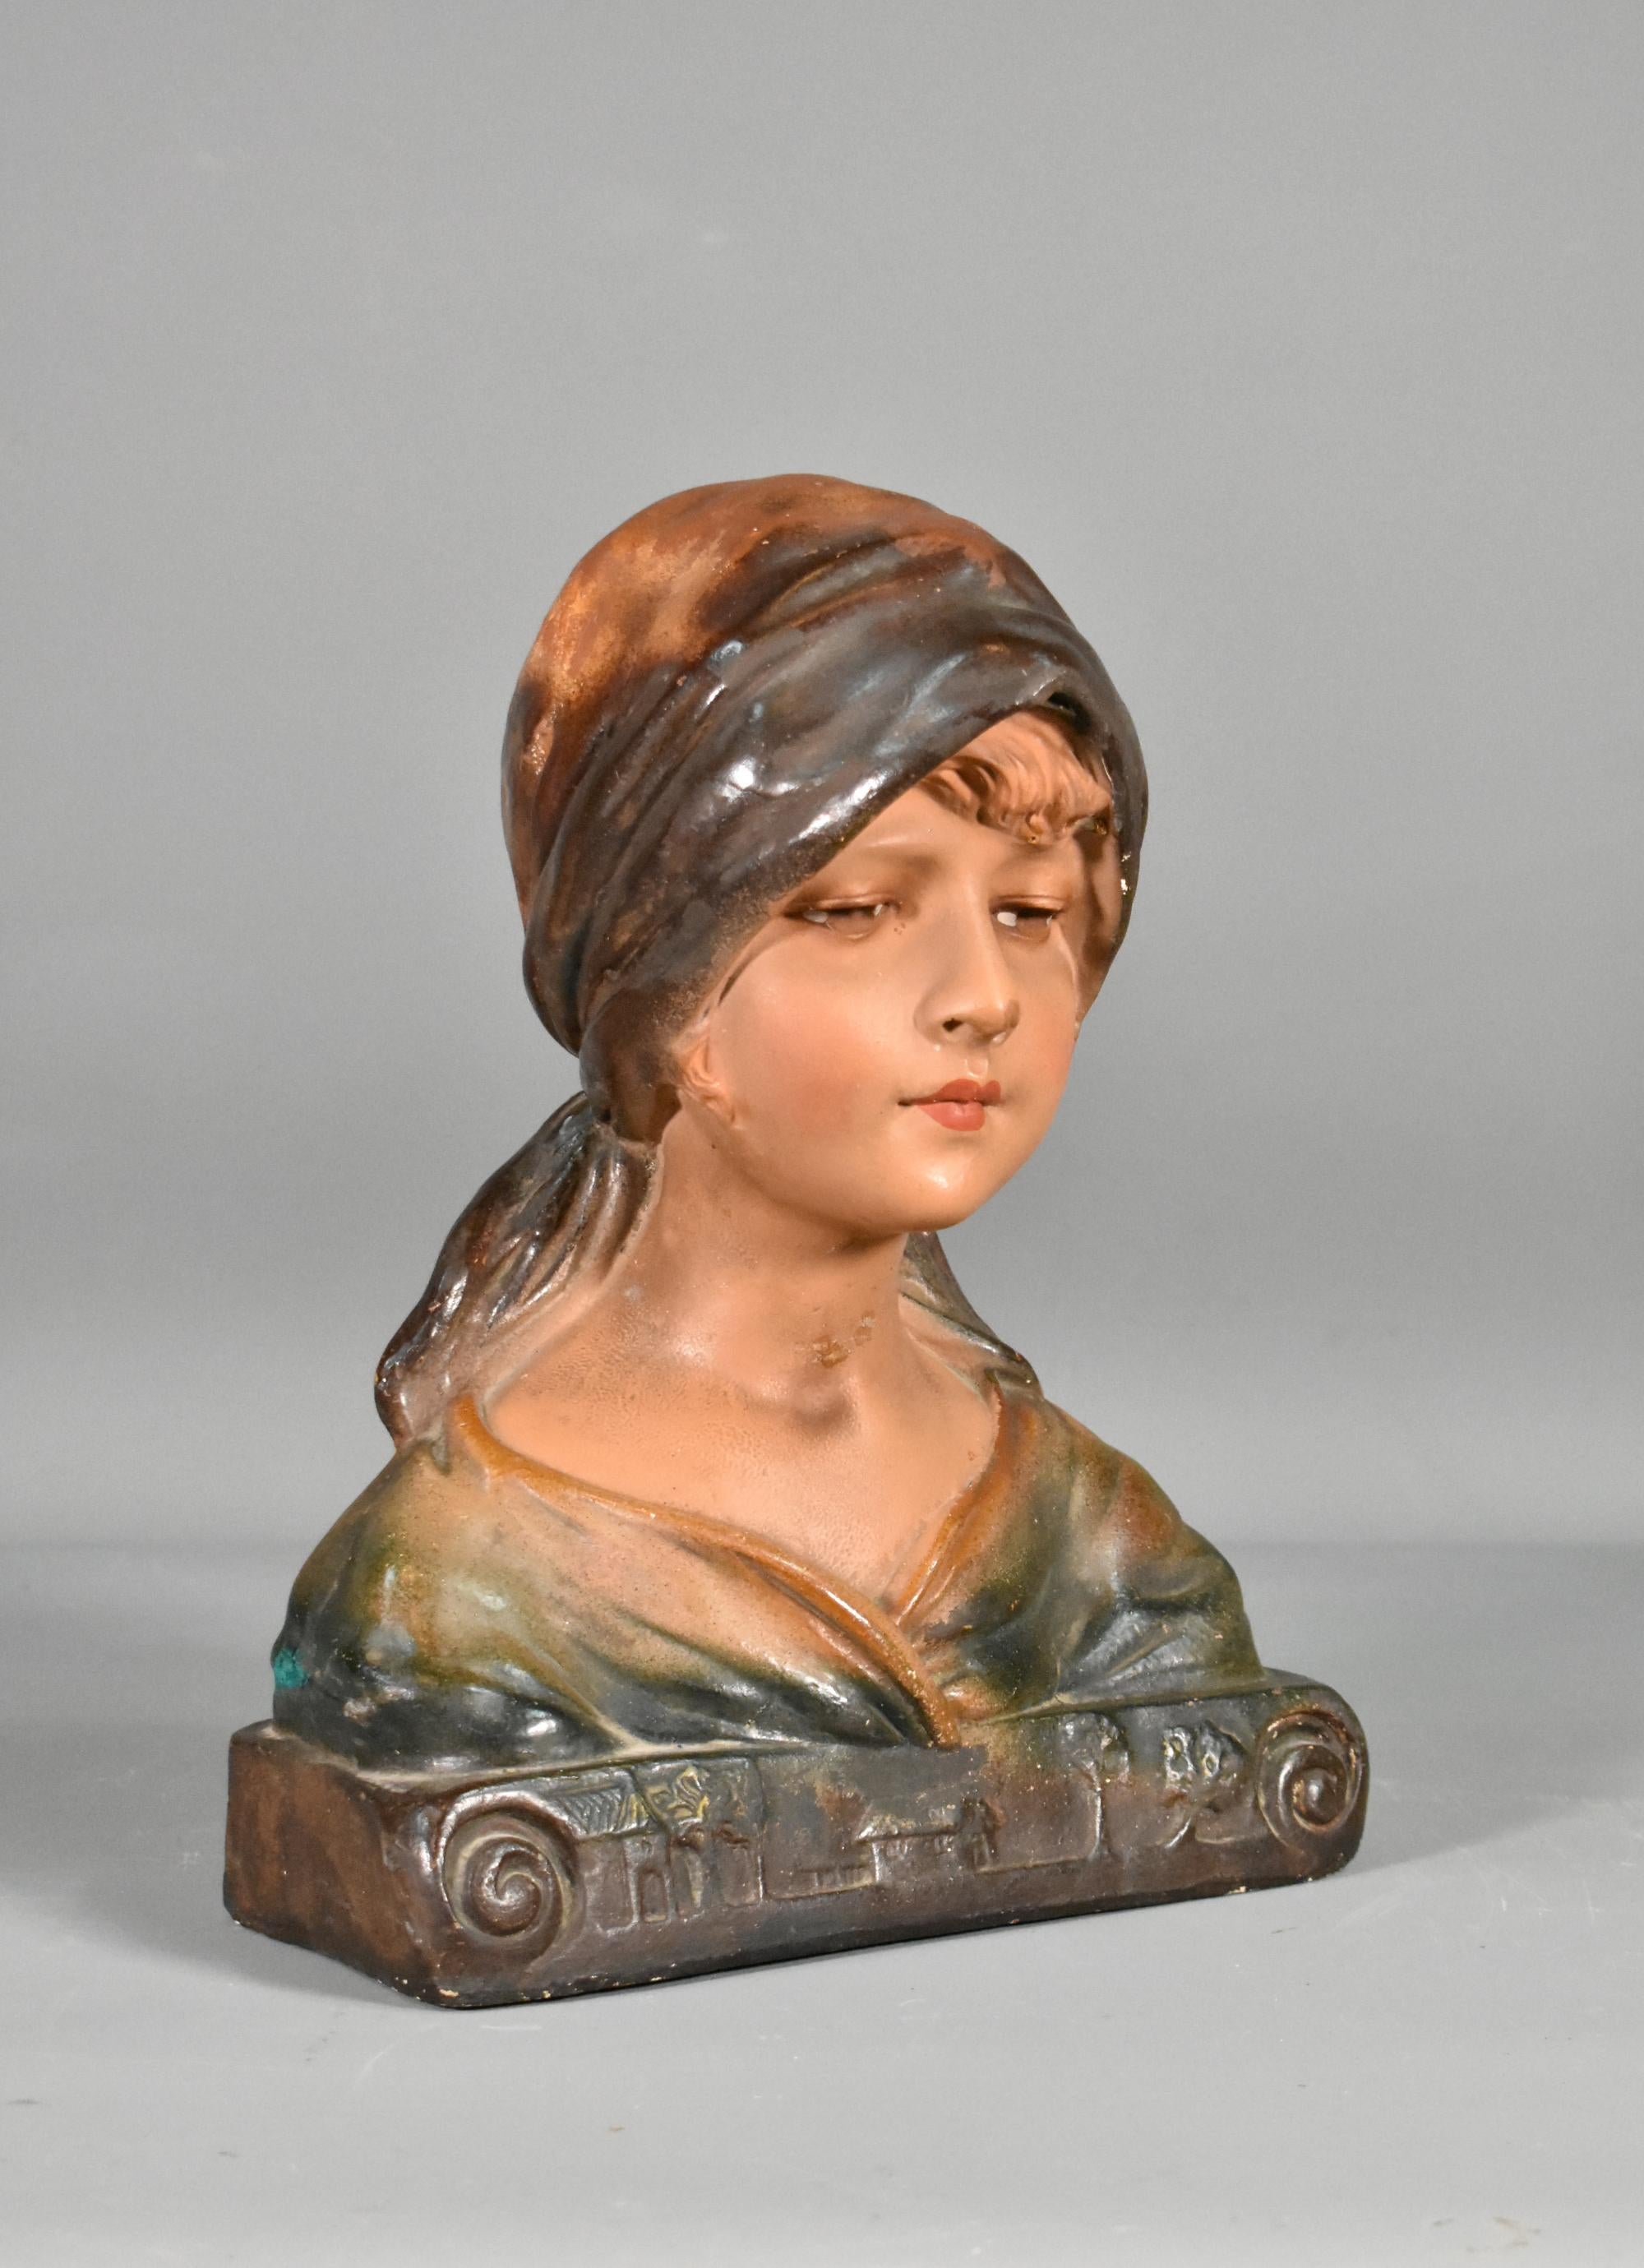 Buste français ancien d'une jeune fille en plâtre 

Joli buste en plâtre polychrome d'une jeune fille portant un foulard et dont les yeux sont dirigés vers le bas. 

La pièce présente des sculptures de bâtiments et d'arbres sur la base avant, dans